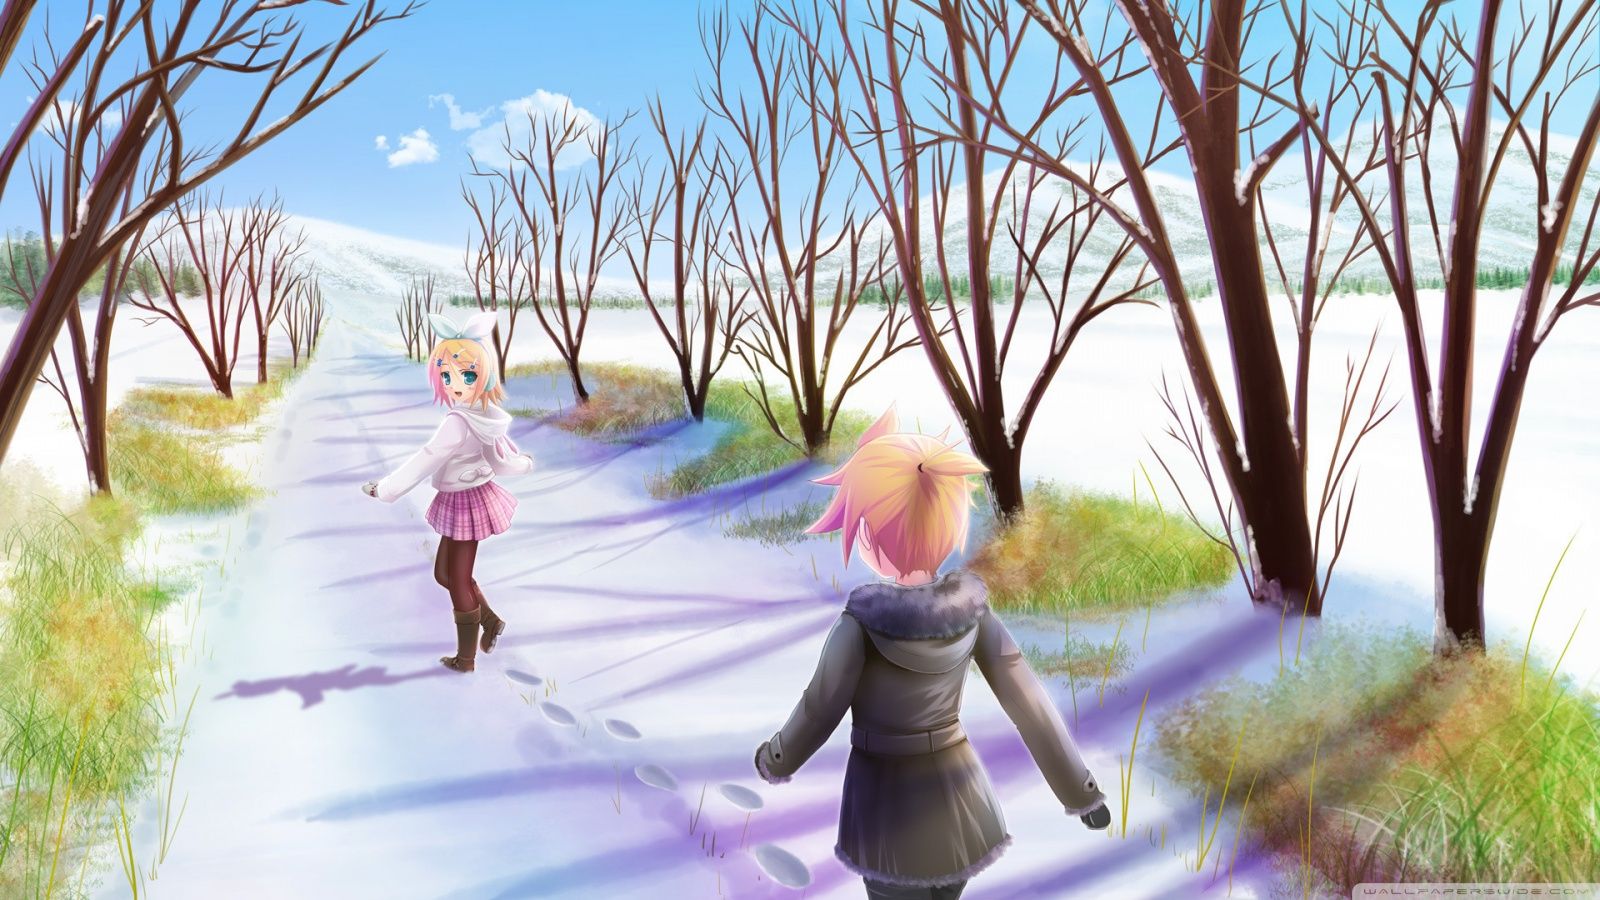 Anime Winter Scene Ultra HD Desktop Background Wallpaper for 4K UHD TV, Tablet